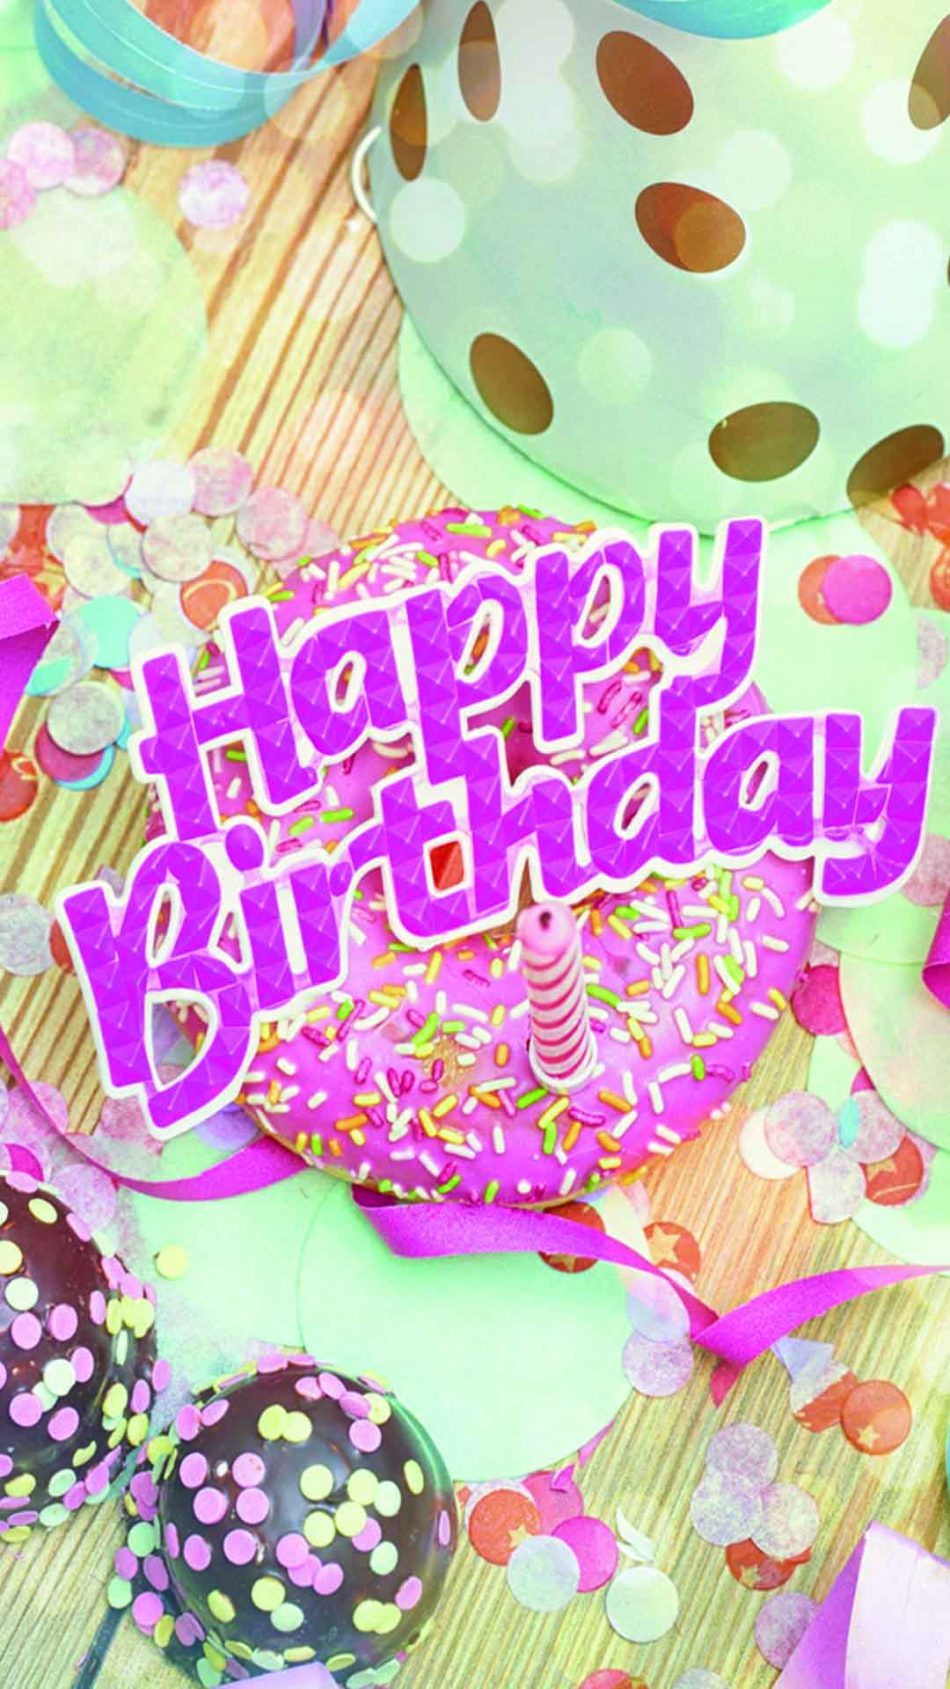 Tải về miễn phí và sử dụng các hình nền sinh nhật đẹp để tạo ra một buổi tiệc sinh nhật hoàn hảo cho người thân của bạn.